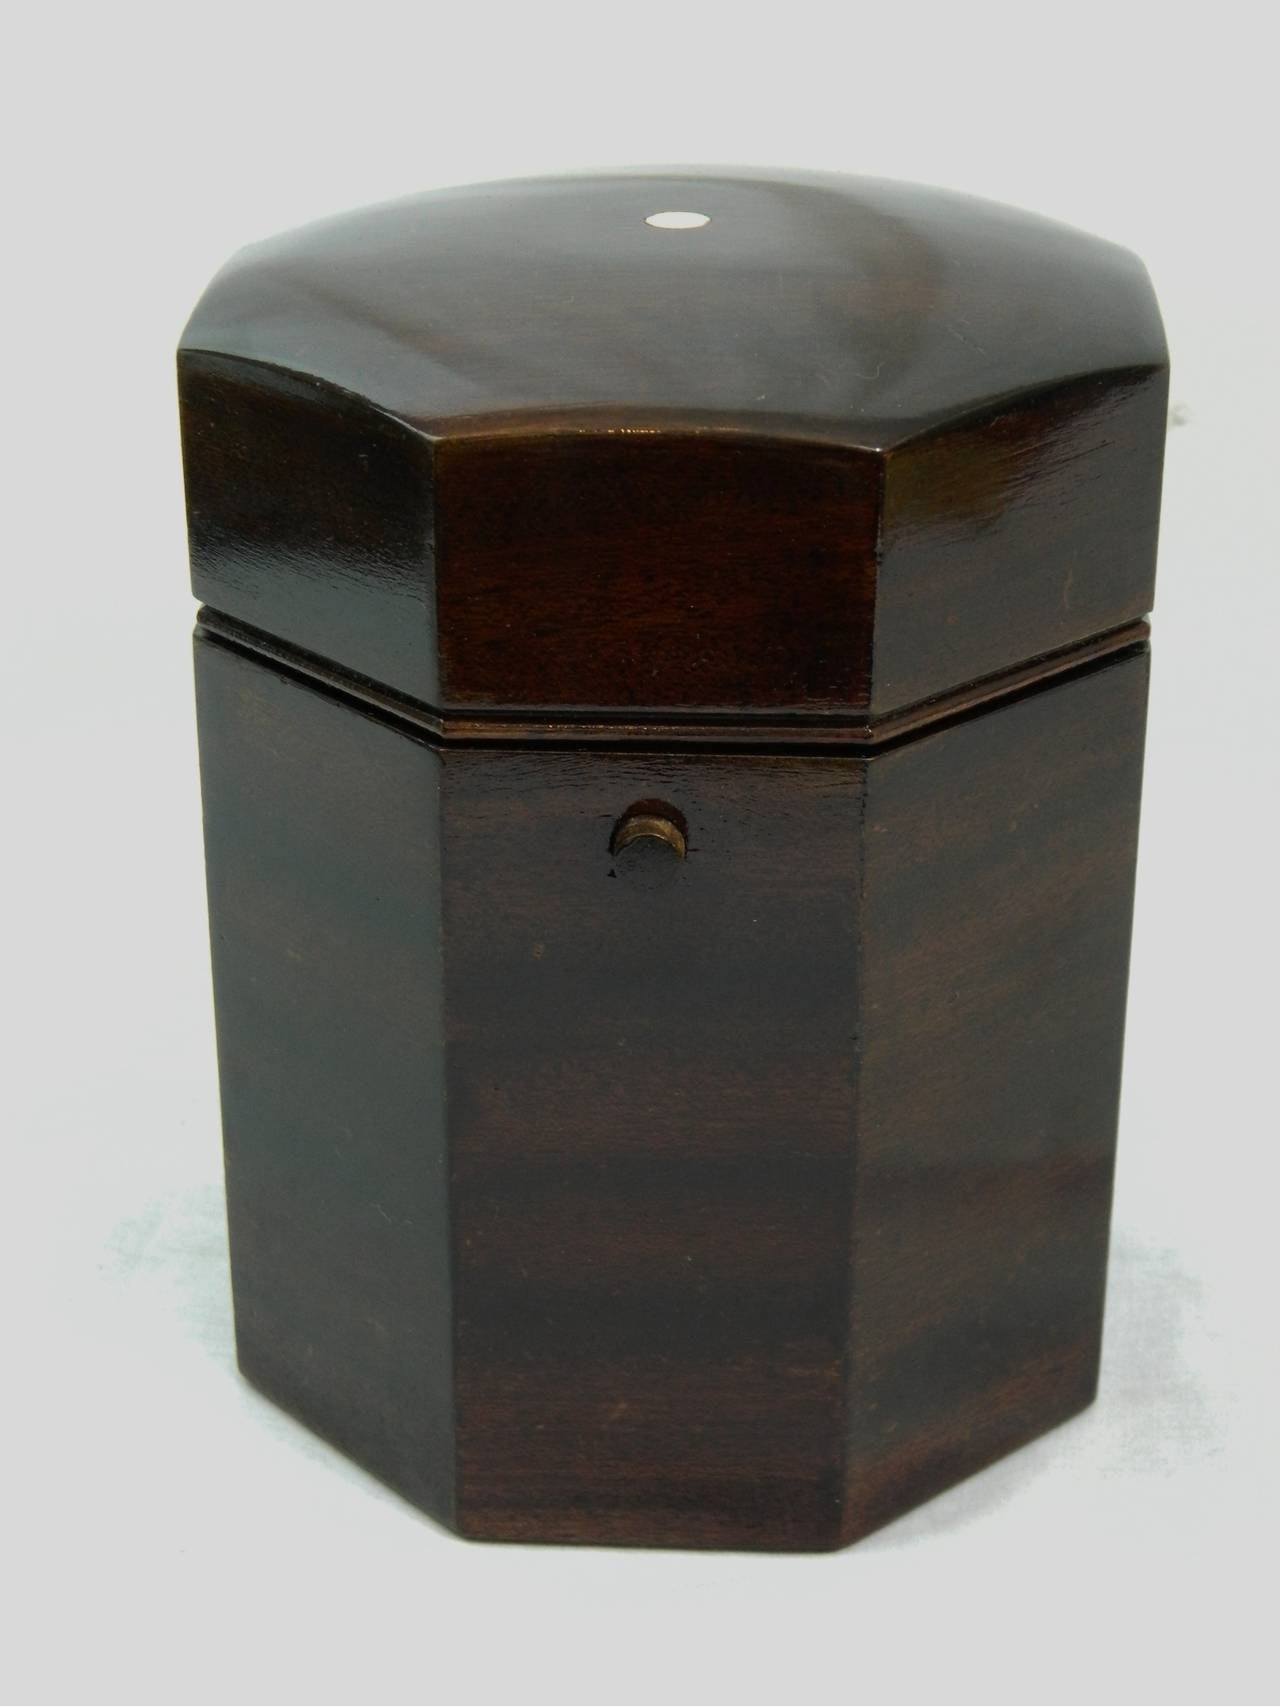 Late 19th century Edwardian mahogany octagonal humidor.